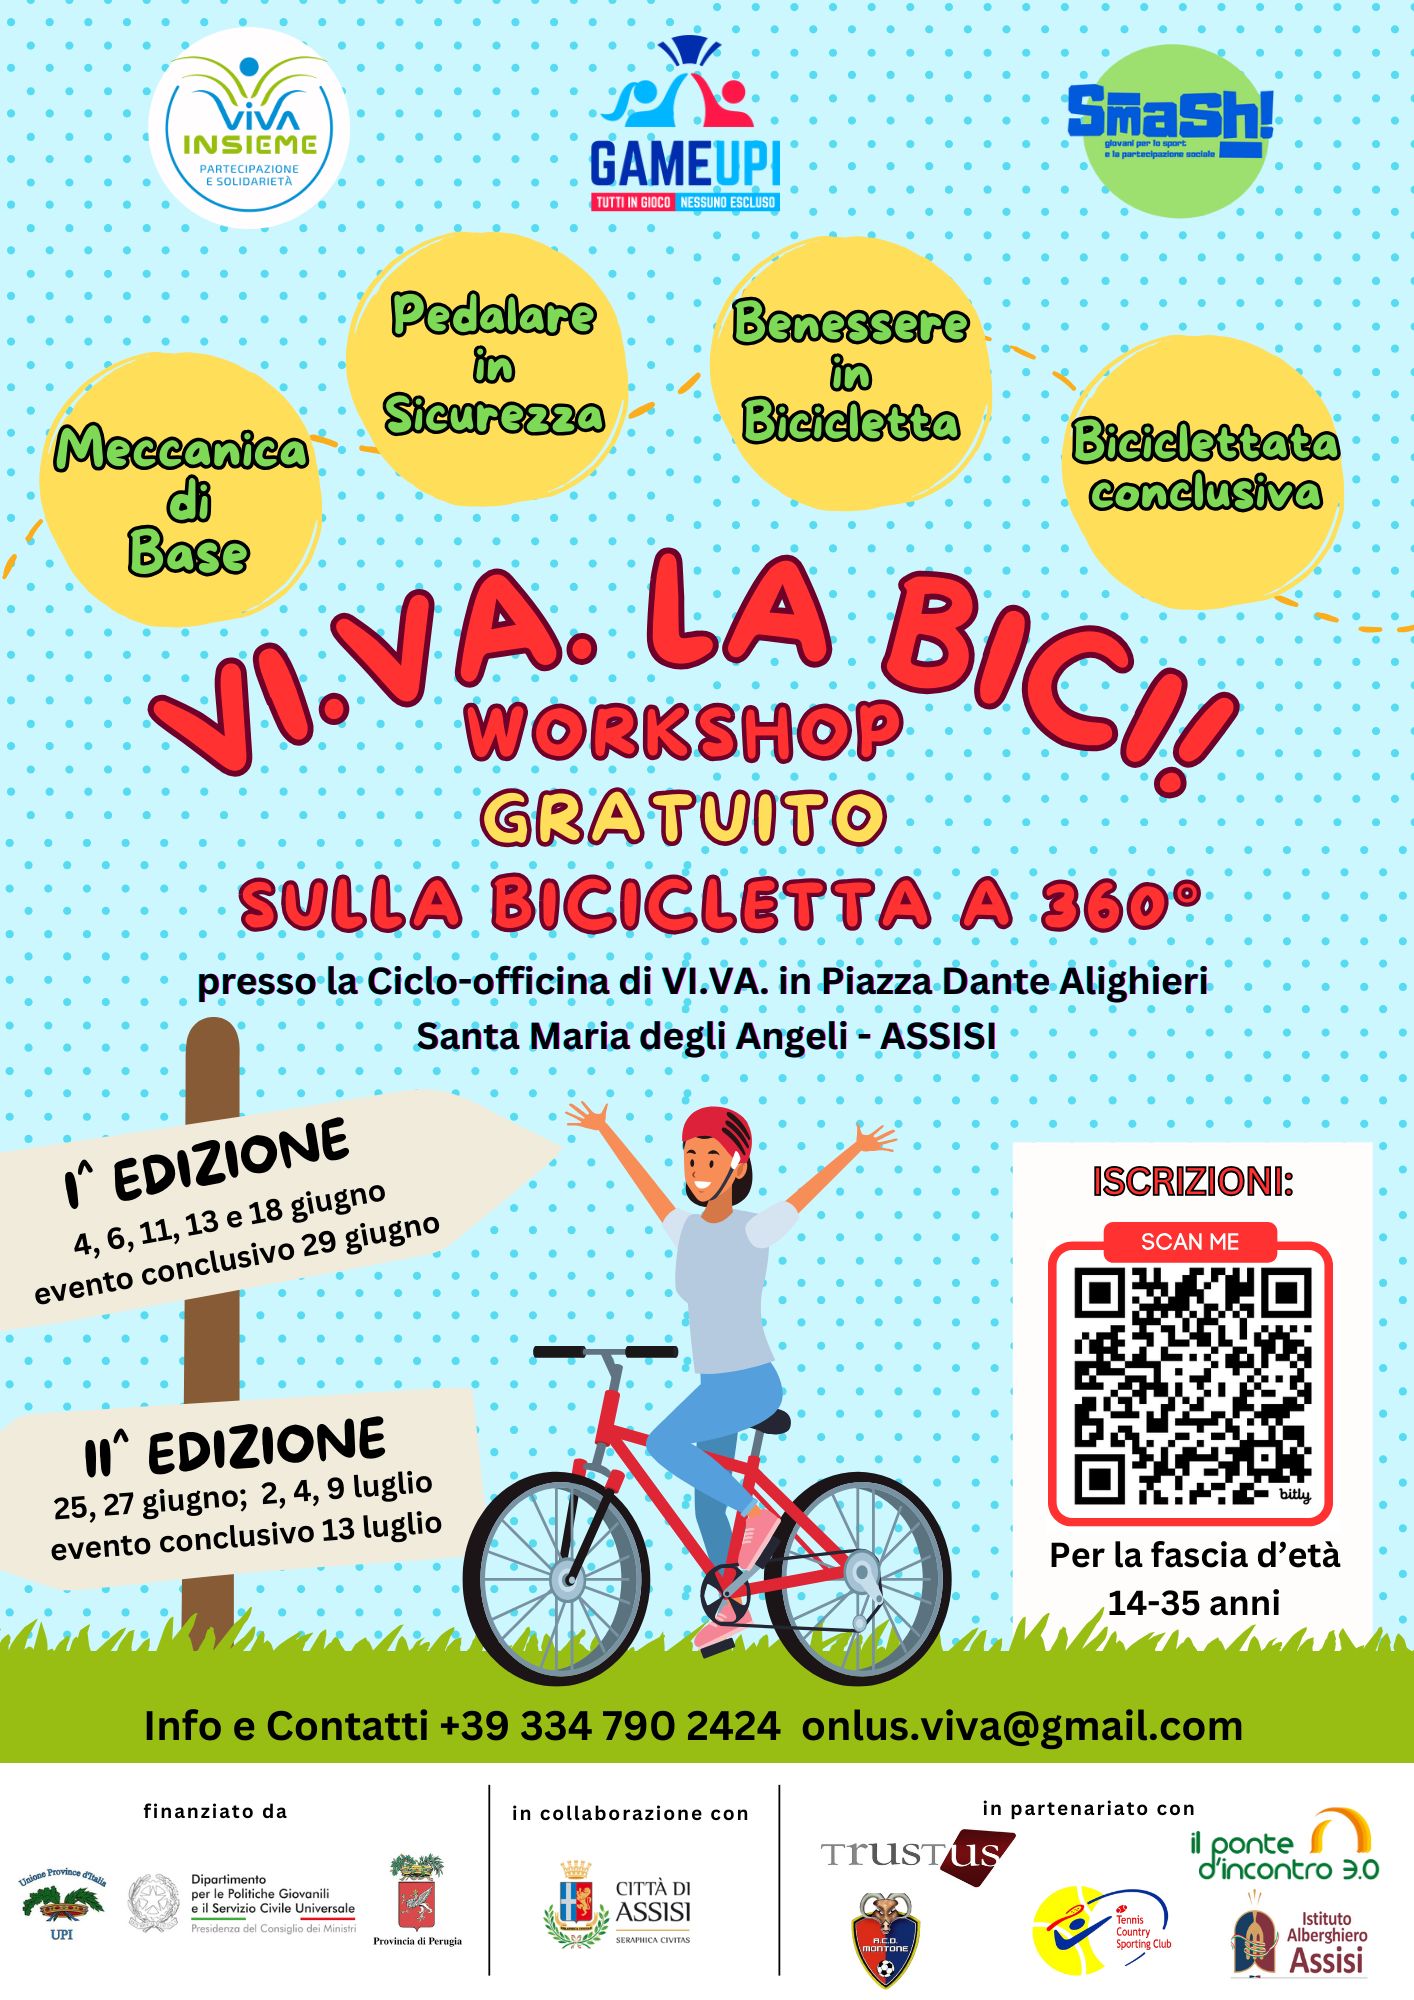 Workshop gratuito “VI.VA. LA BICI!” grazie al progetto Smash!